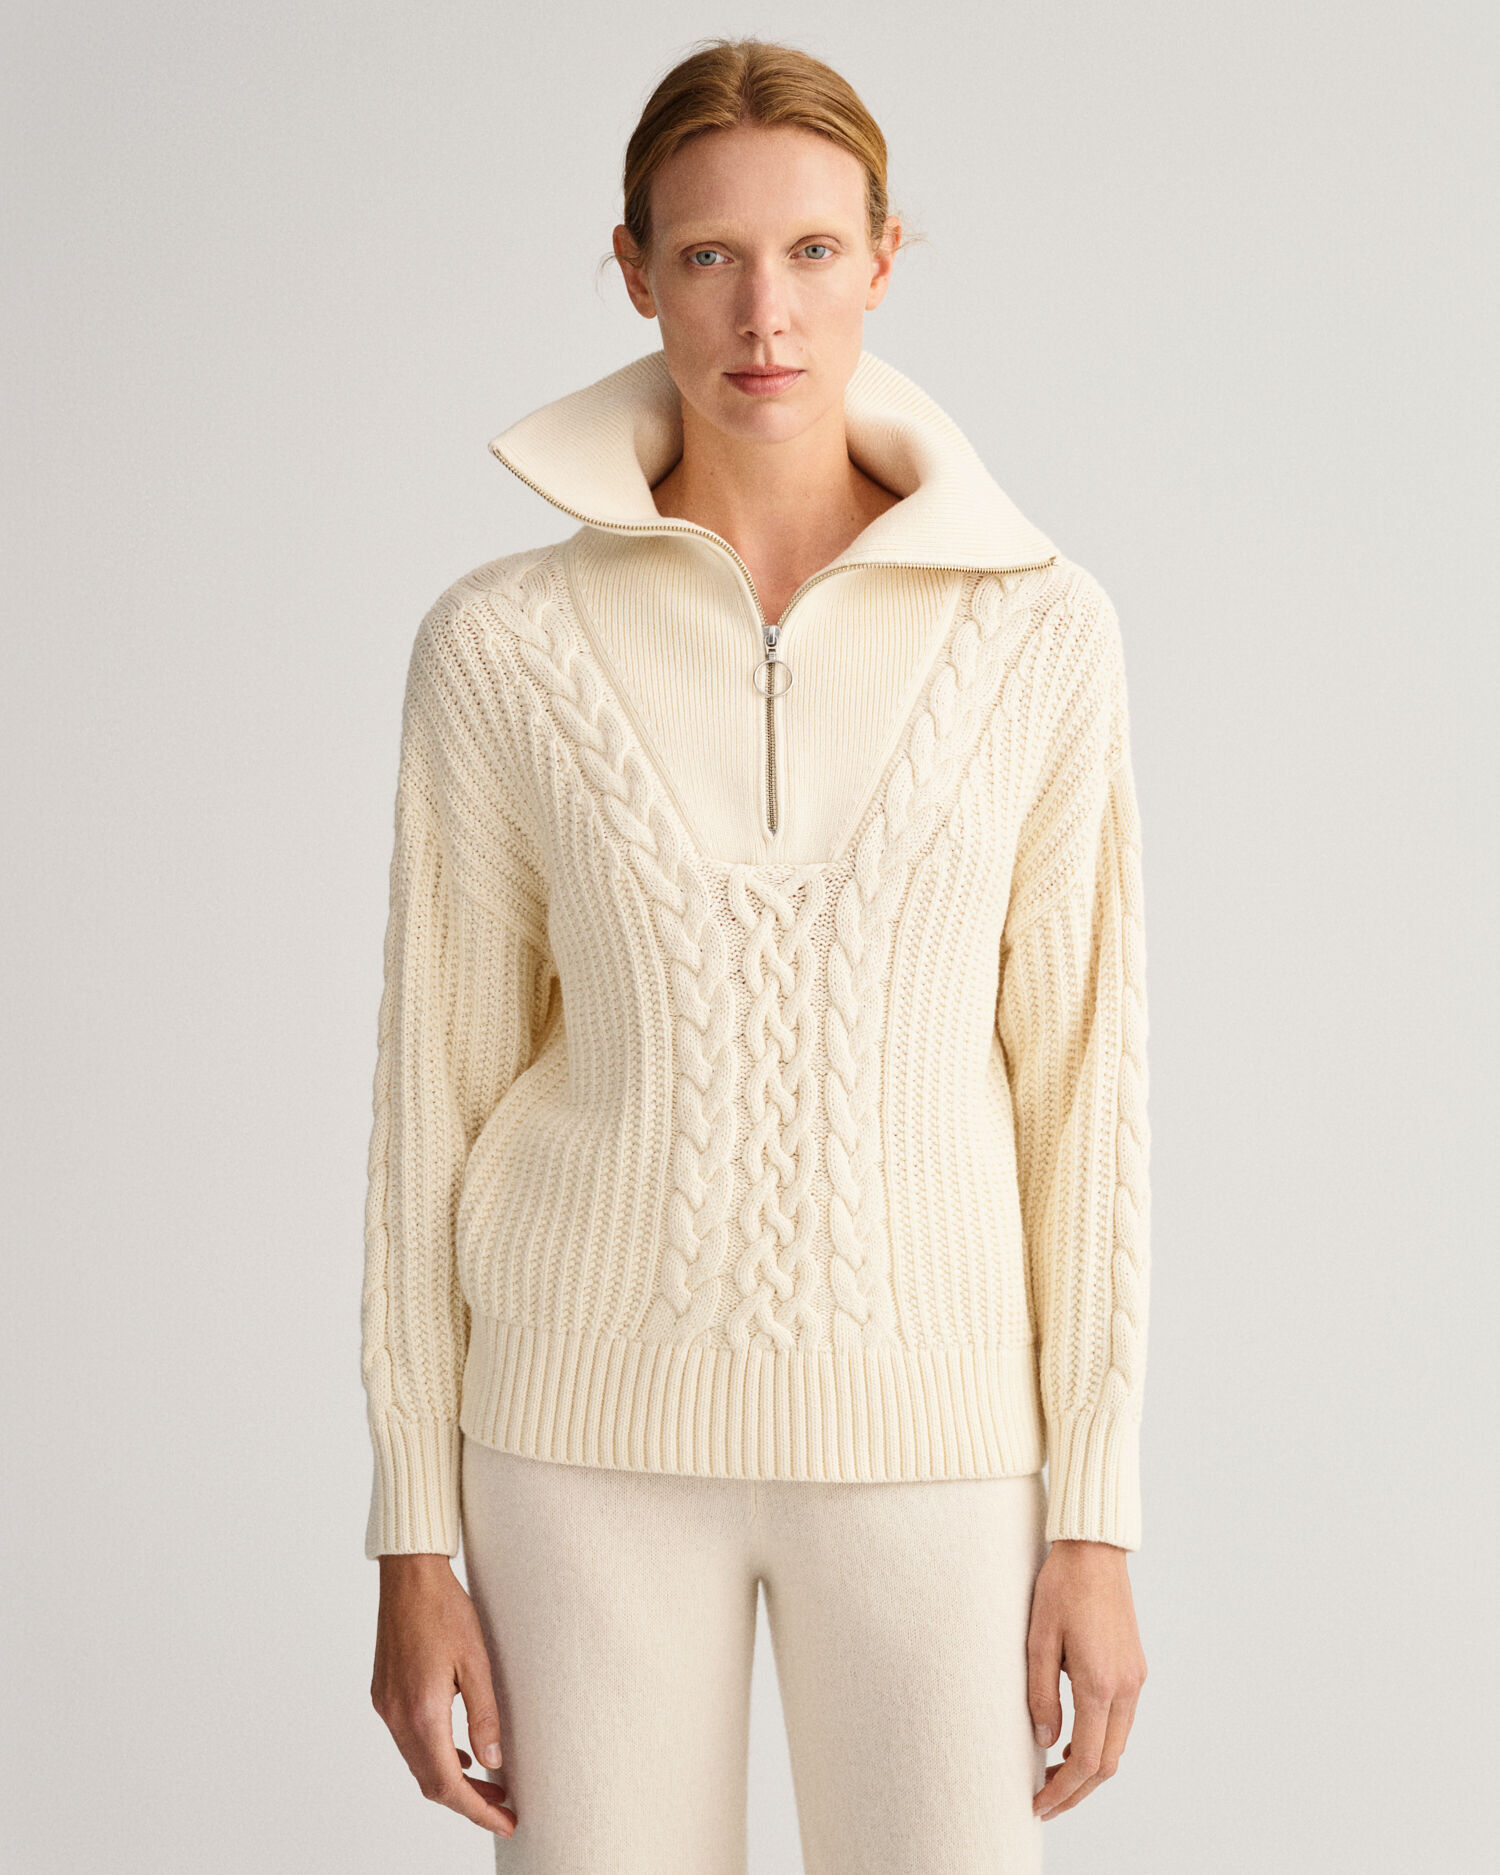 Alpachill sweater jas alpaca blend ultra warm jasje Kleding Dameskleding Hoodies & Sweatshirts Hoodies 